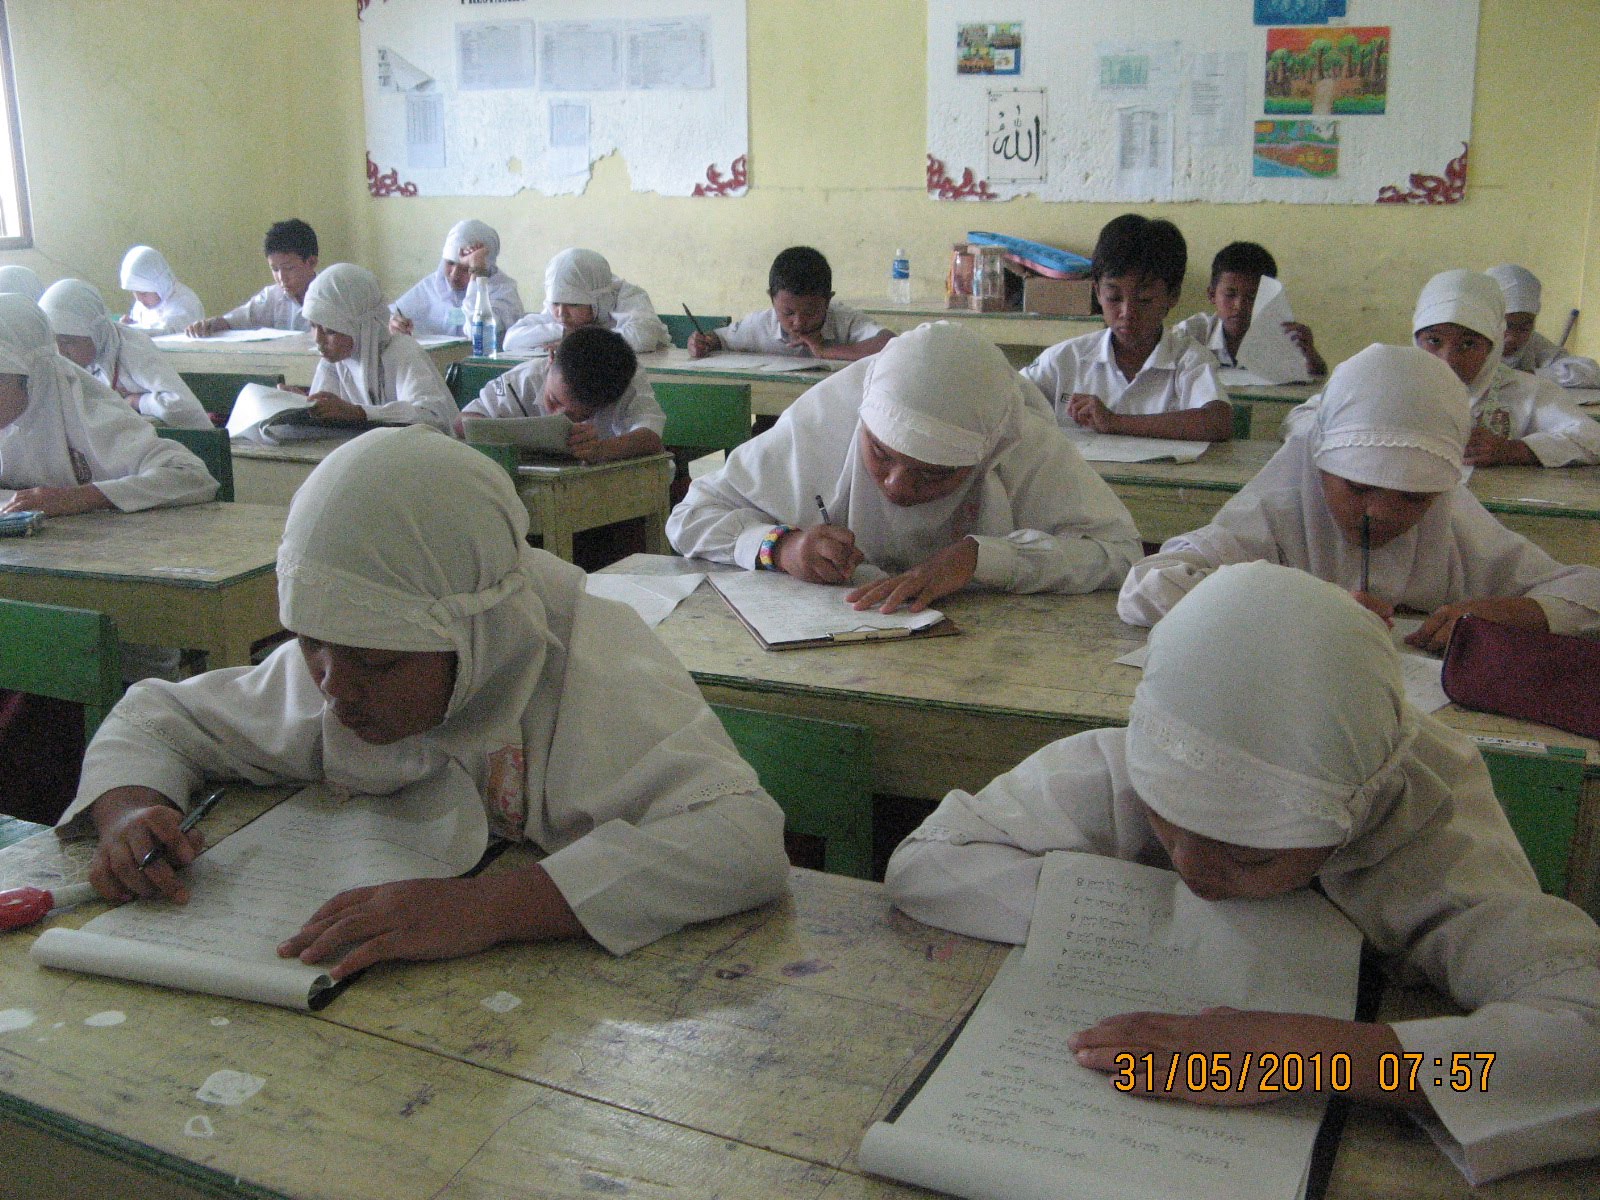 Daftar Mata Pelajaran yang sudah mengadakan Ulangan Sebagai berikut 1 Matematika 2 PAI 3 Bahasa Indonesia 4 Bahasa Inggris 5 Bahasa Jawa